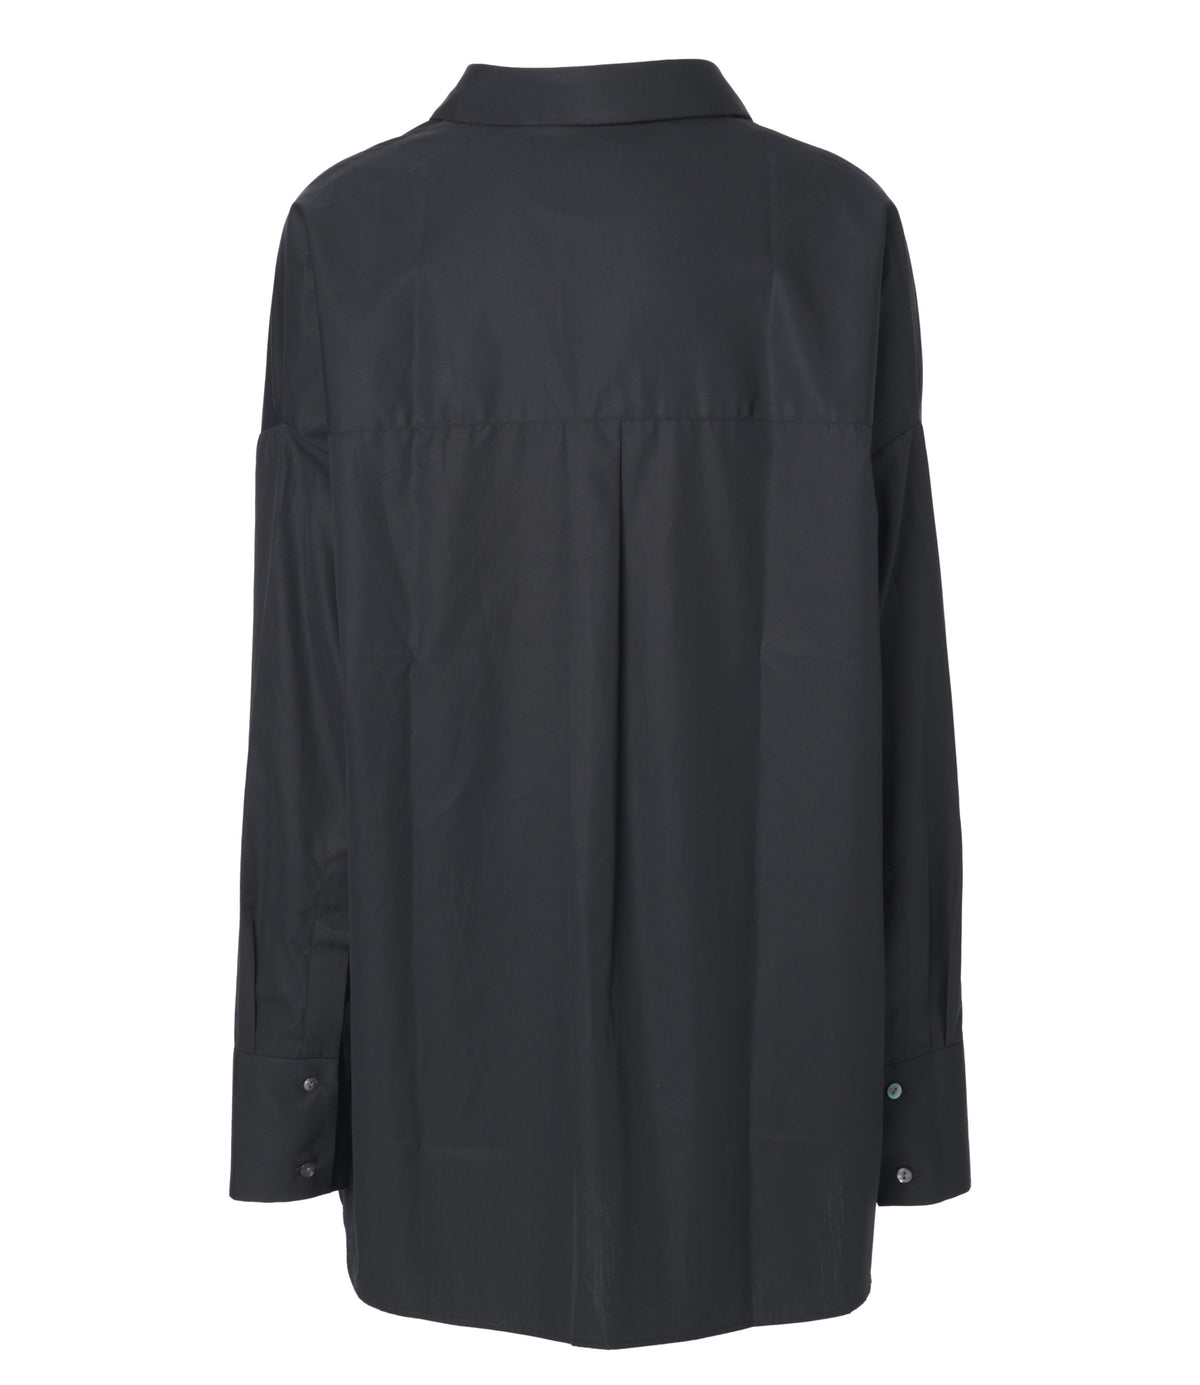 Jean Maroe - Bluse aus Baumwolle in schwarz